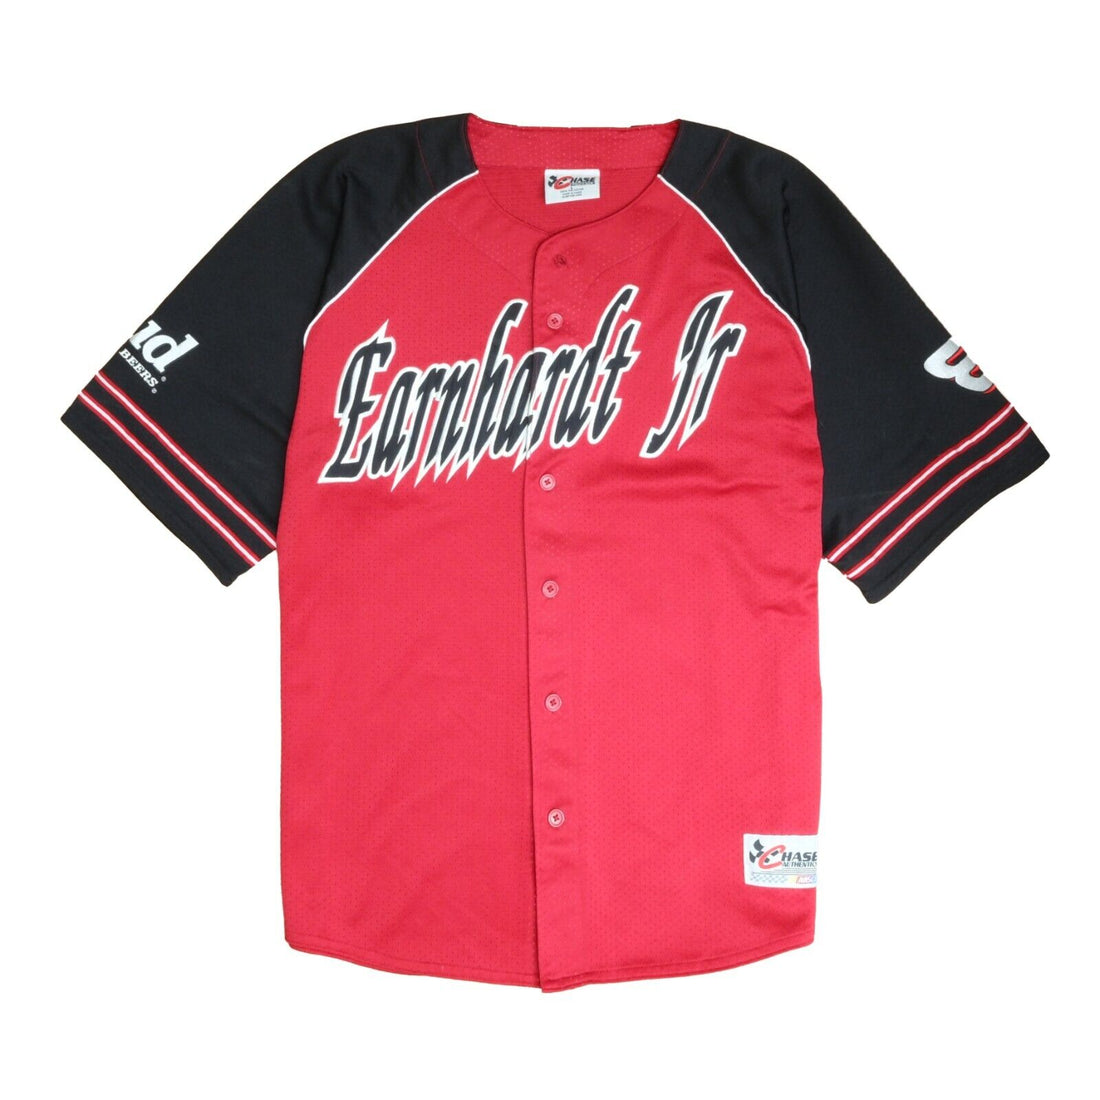 Vintage Dale Earnhardt Jr Chase Baseball Jersey Size Large Red Bud Beer NASCAR